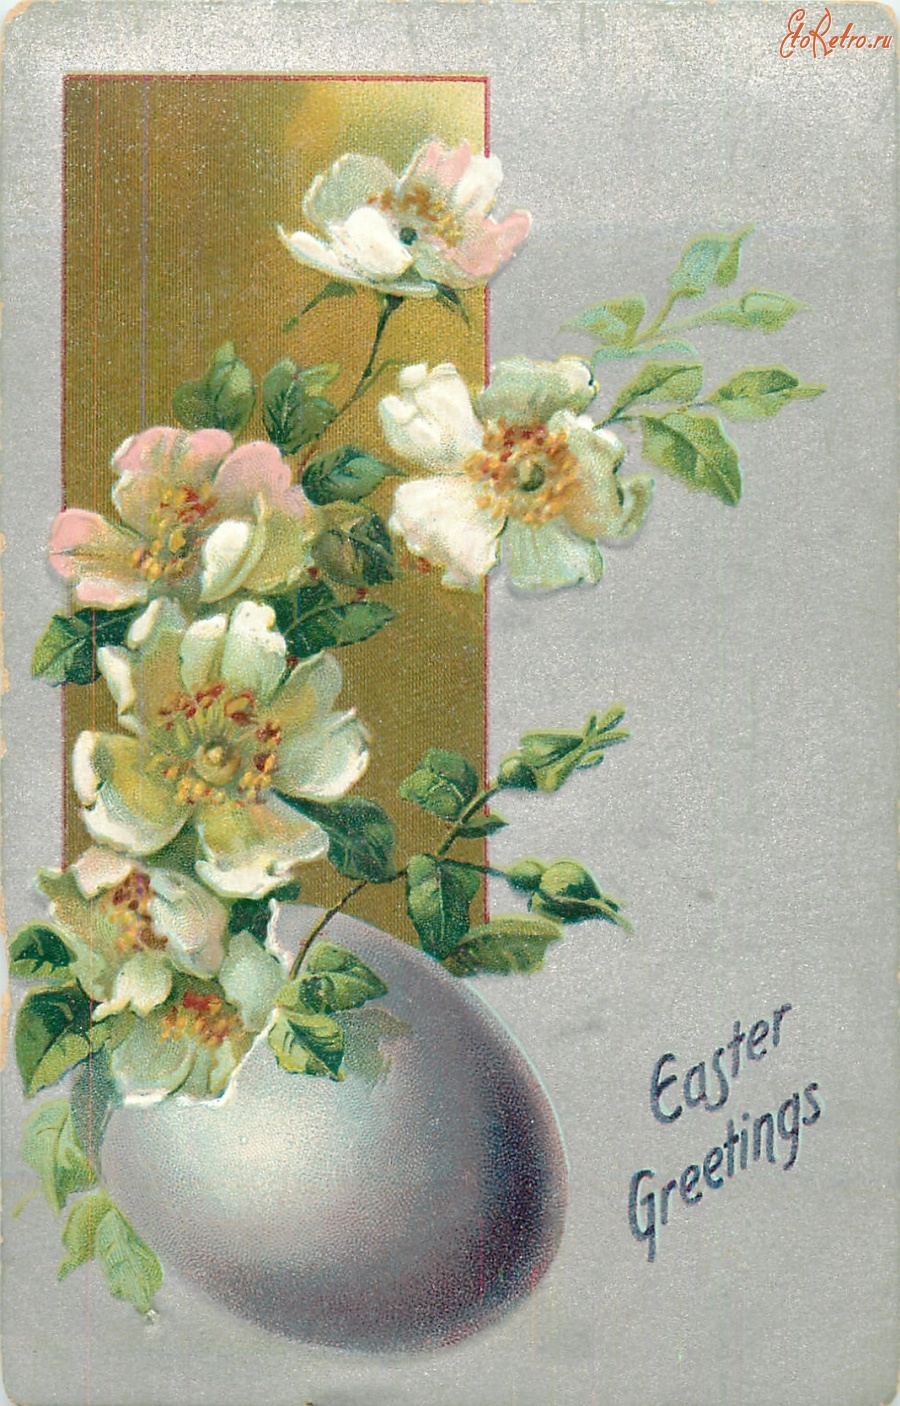 Ретро открытки - Счастливой Пасхи. Фиолетовое пасхальное яйцо и яблоневый цвет